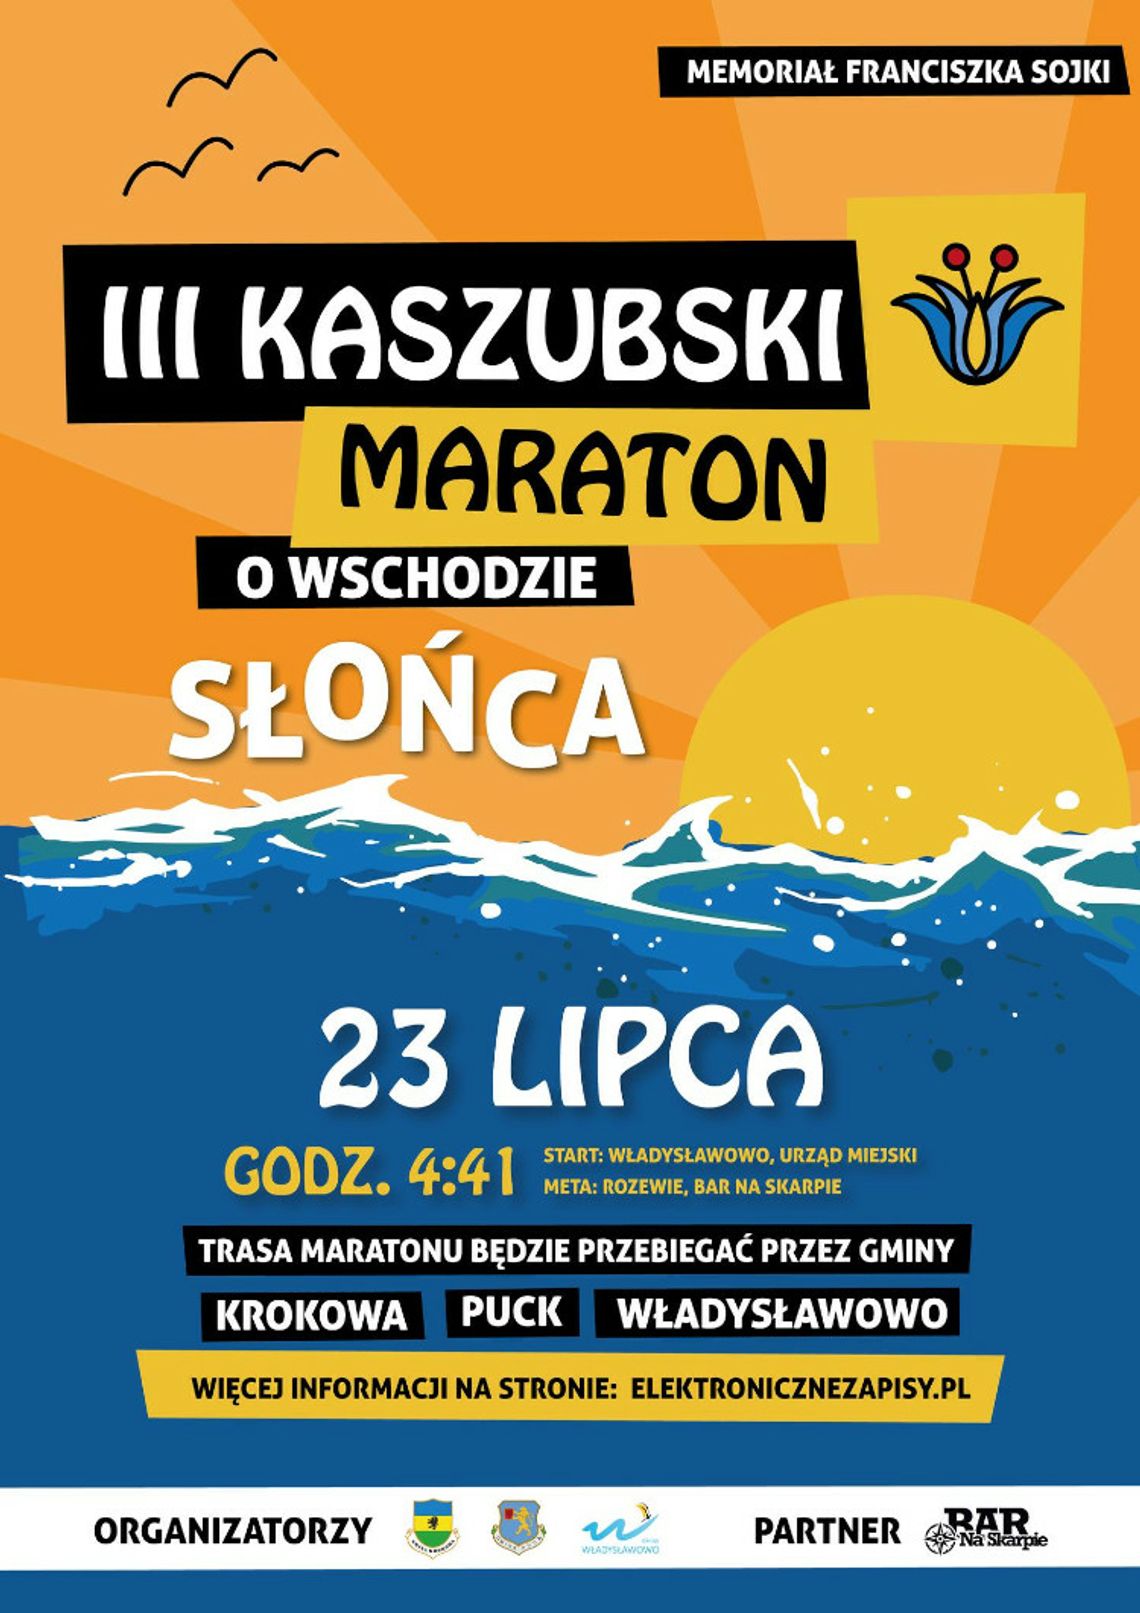 III Kaszubski maraton o wschodzie słońca. Start we Władysławowie